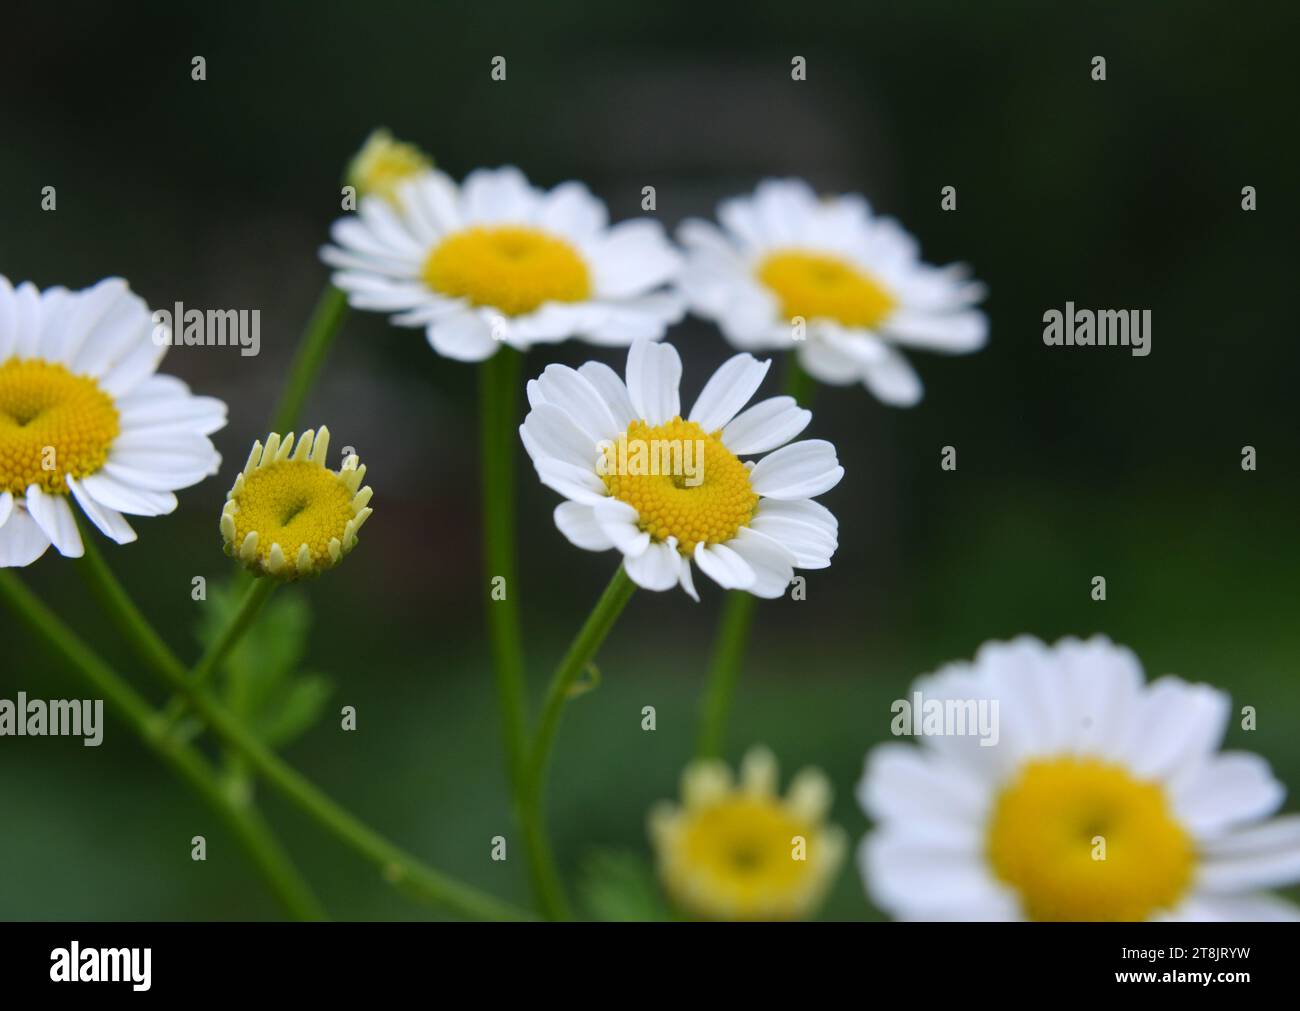 In summer, Tanacetum parthenium blooms in nature Stock Photo